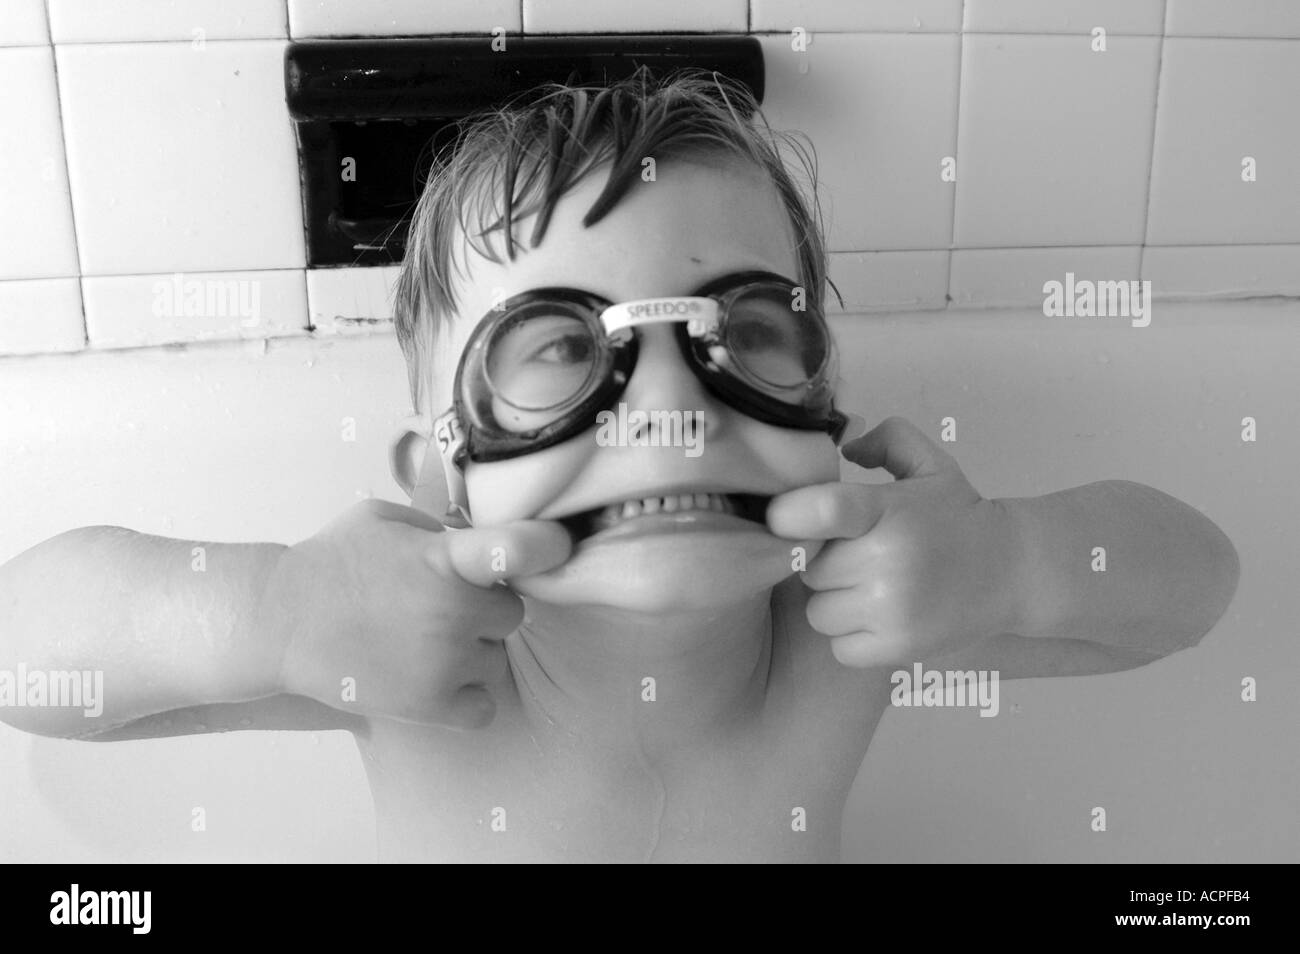 Kleiner Junge in Wanne Schwimmer tragen Brillen machen lustige Gesicht Lächeln Lachen Humor Humor Familienleben Stockfoto